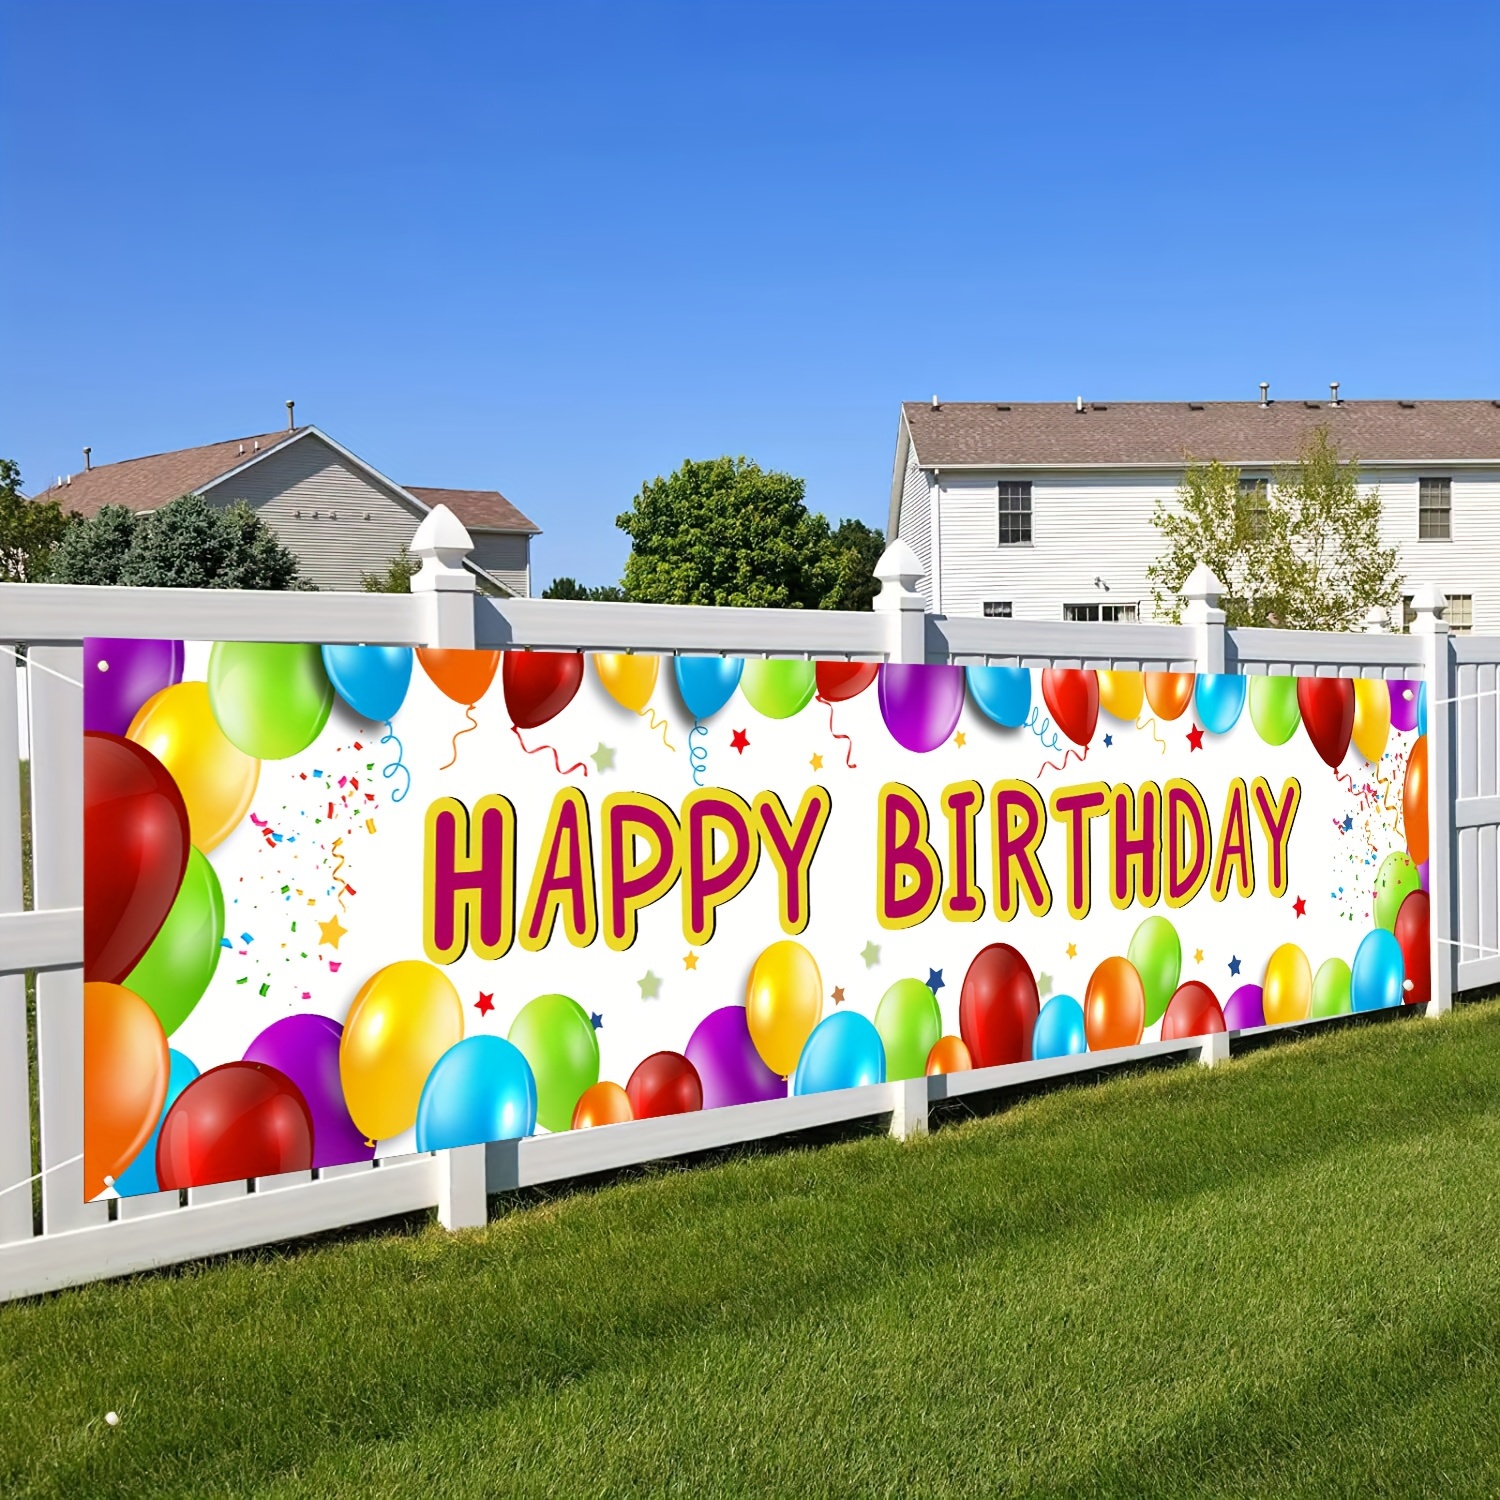 

Une Banderole D'anniversaire Avec Des Ballons Colorés Pour Décorer La Clôture Et Créer Un Arrière-plan Géant Pour Les Photos En Extérieur Lors D'une Fête D'anniversaire Au Printemps.